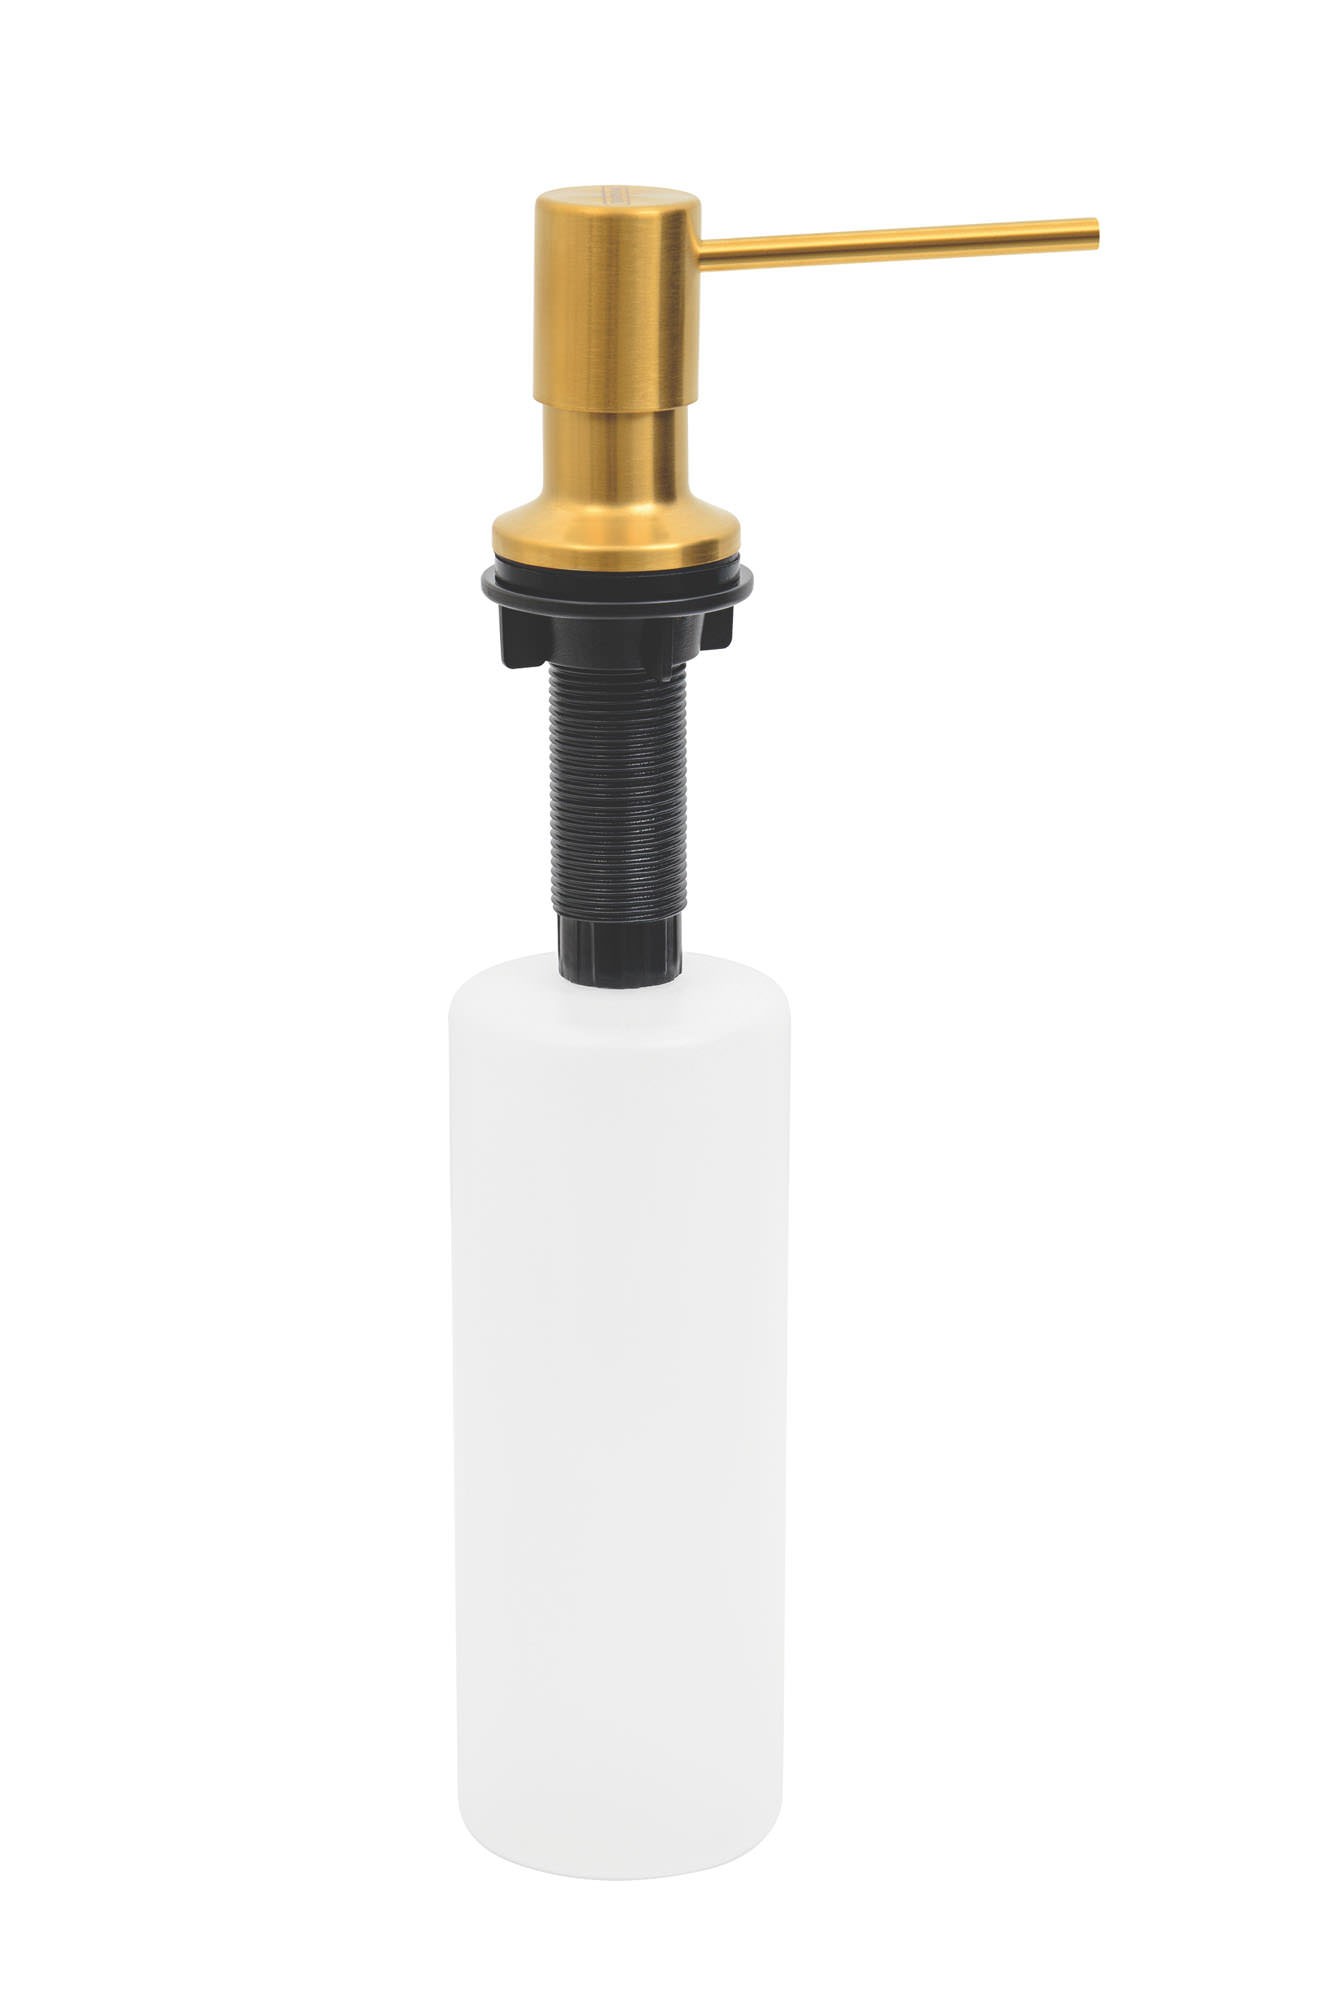 Dosador de Sabão em Aço inox Gold com Recipiente Plástico 500 ml com revestimento PVD